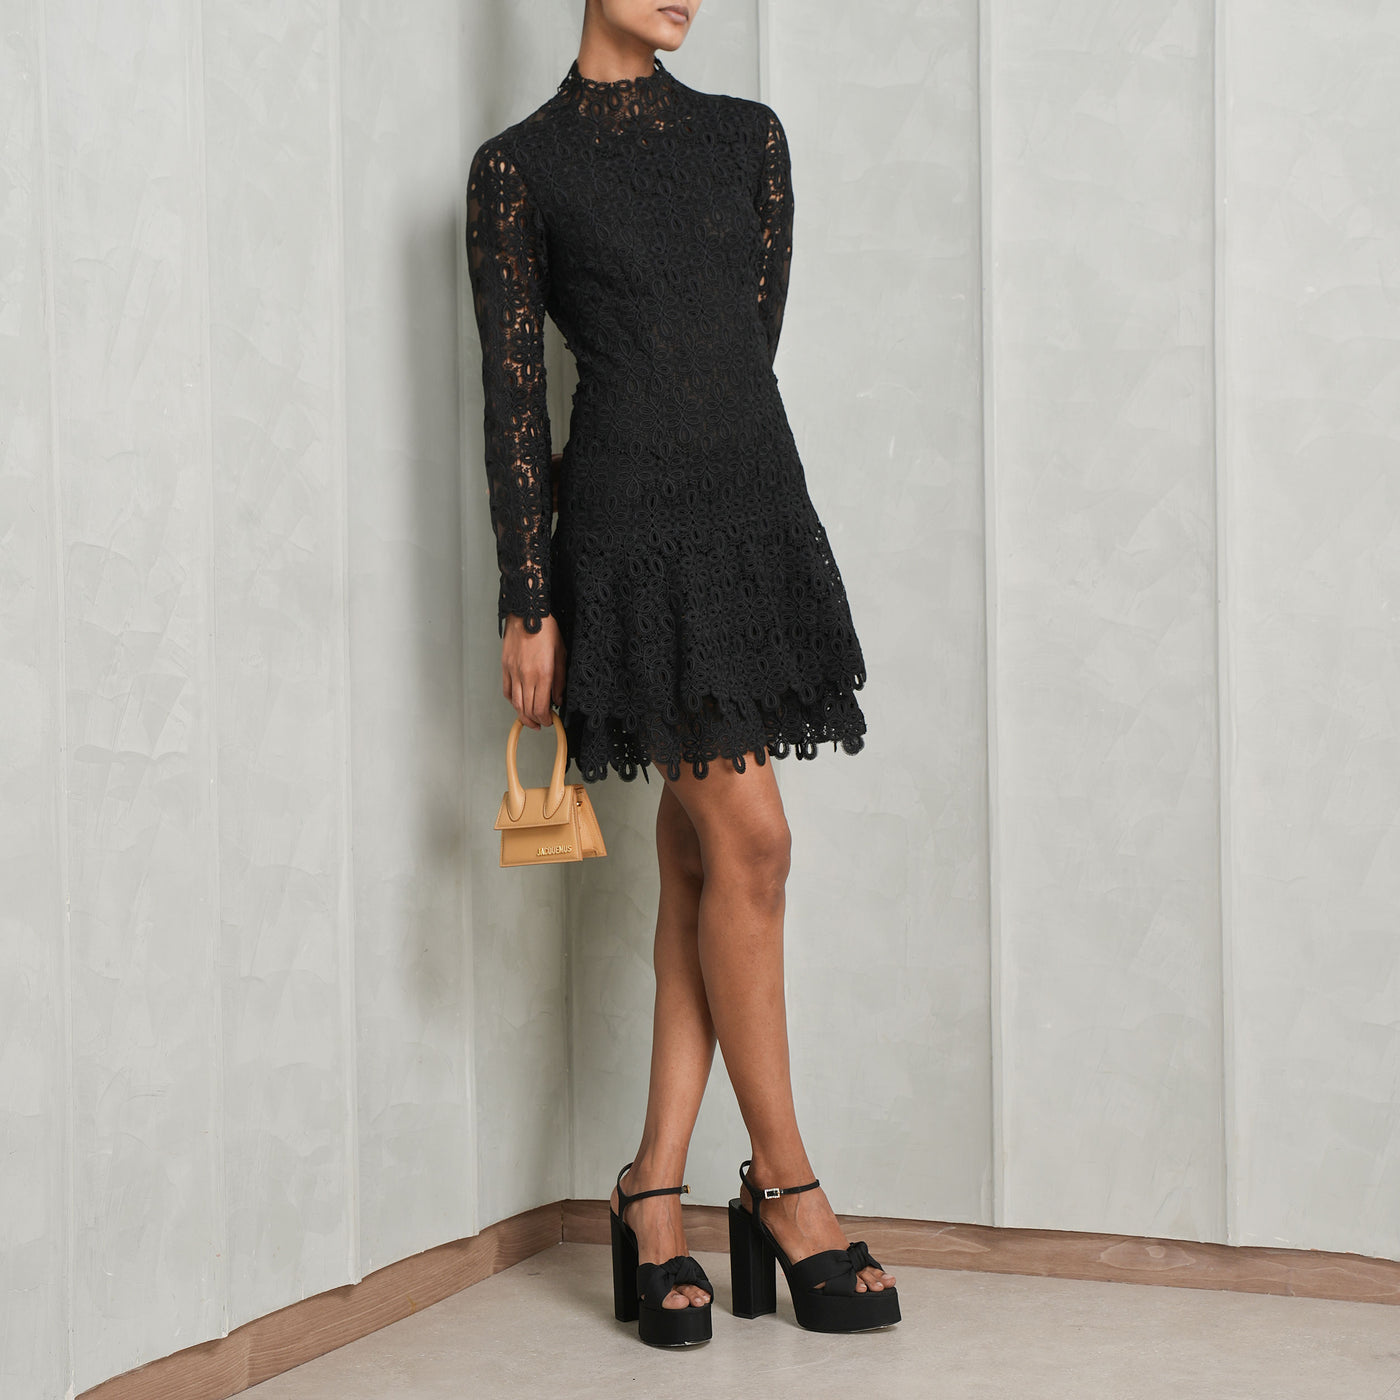 SIMKHAI black lace joy mini dress